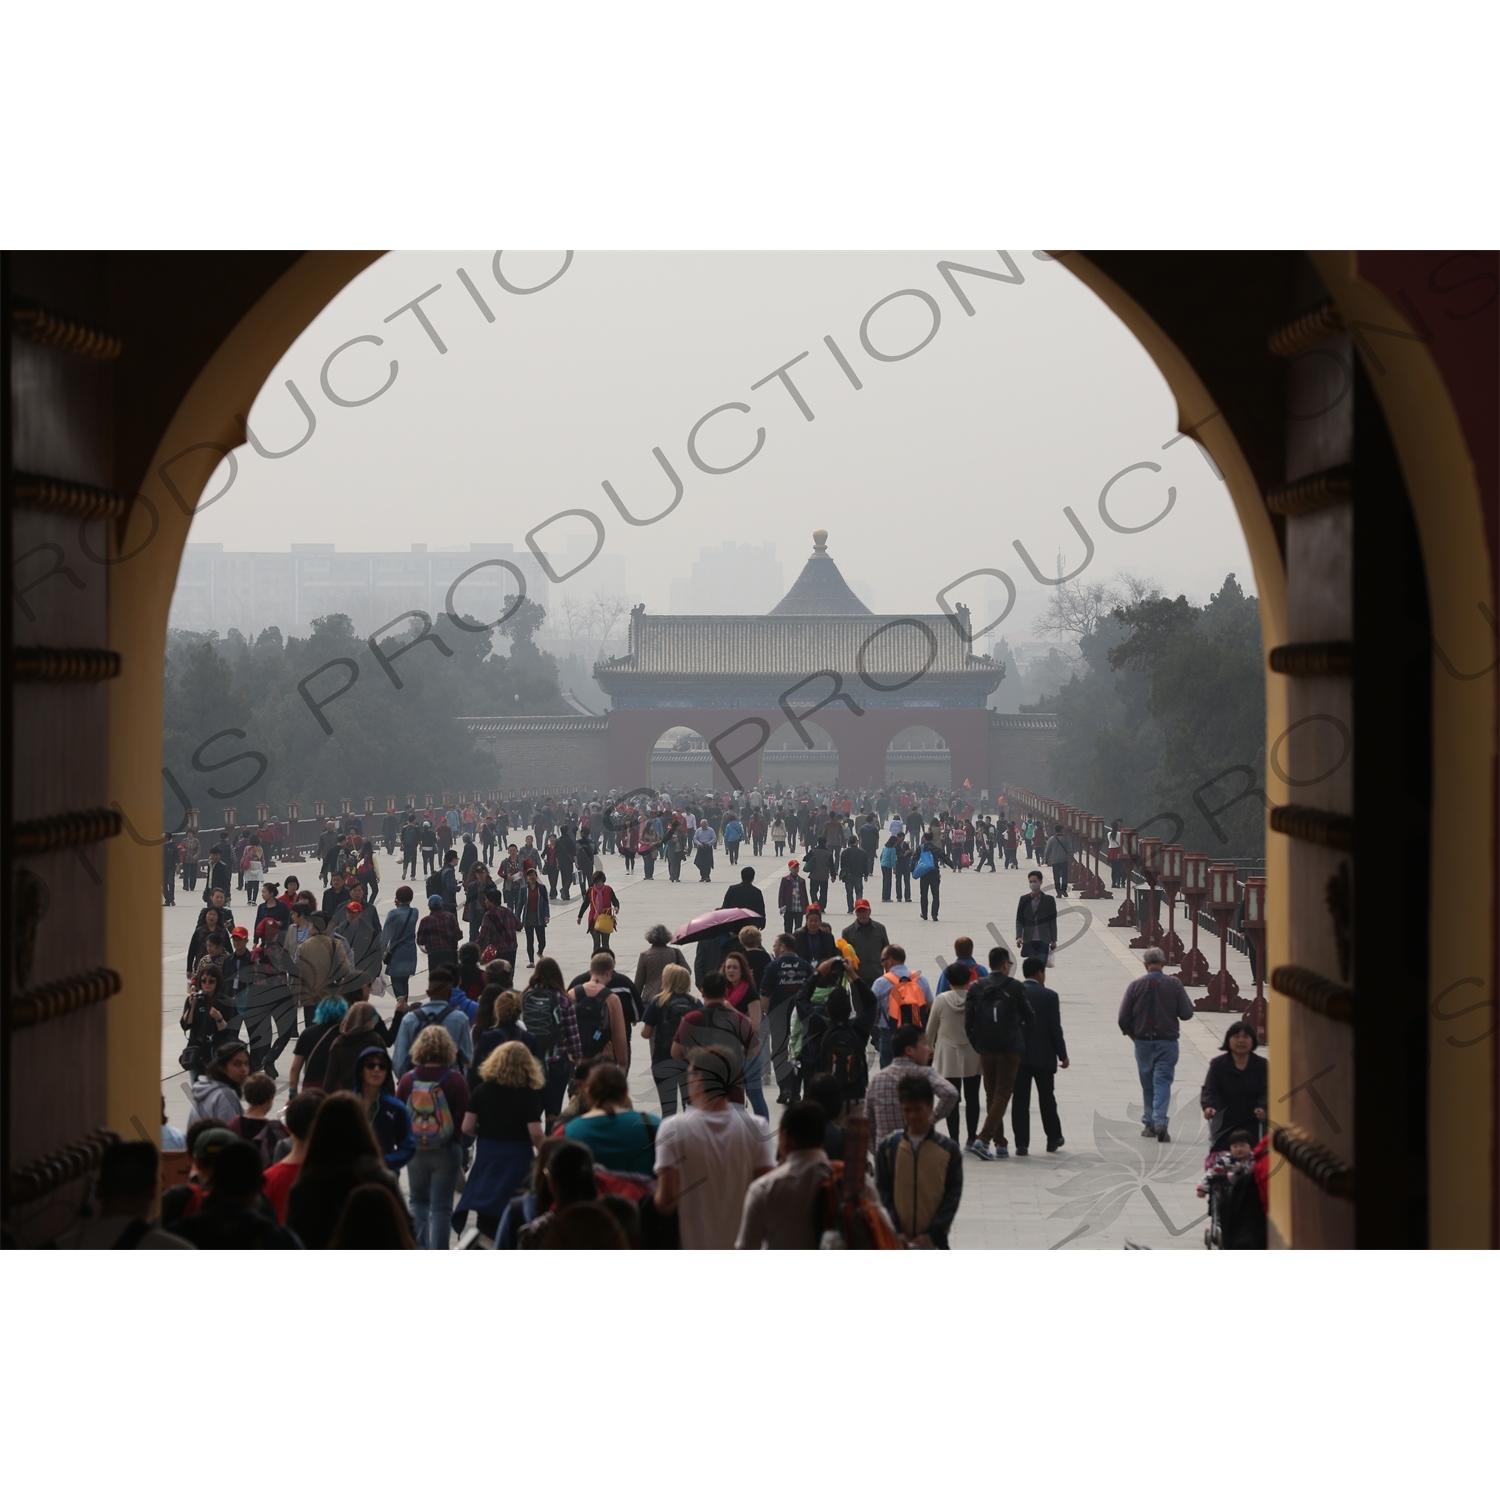 Danbi Bridge/Sacred Way, Chengzhen Gate (Chengzhen Men) and Imperial Vault of Heaven (Huang Qiong Yu) in the Temple of Heaven (Tiantan) in Beijing